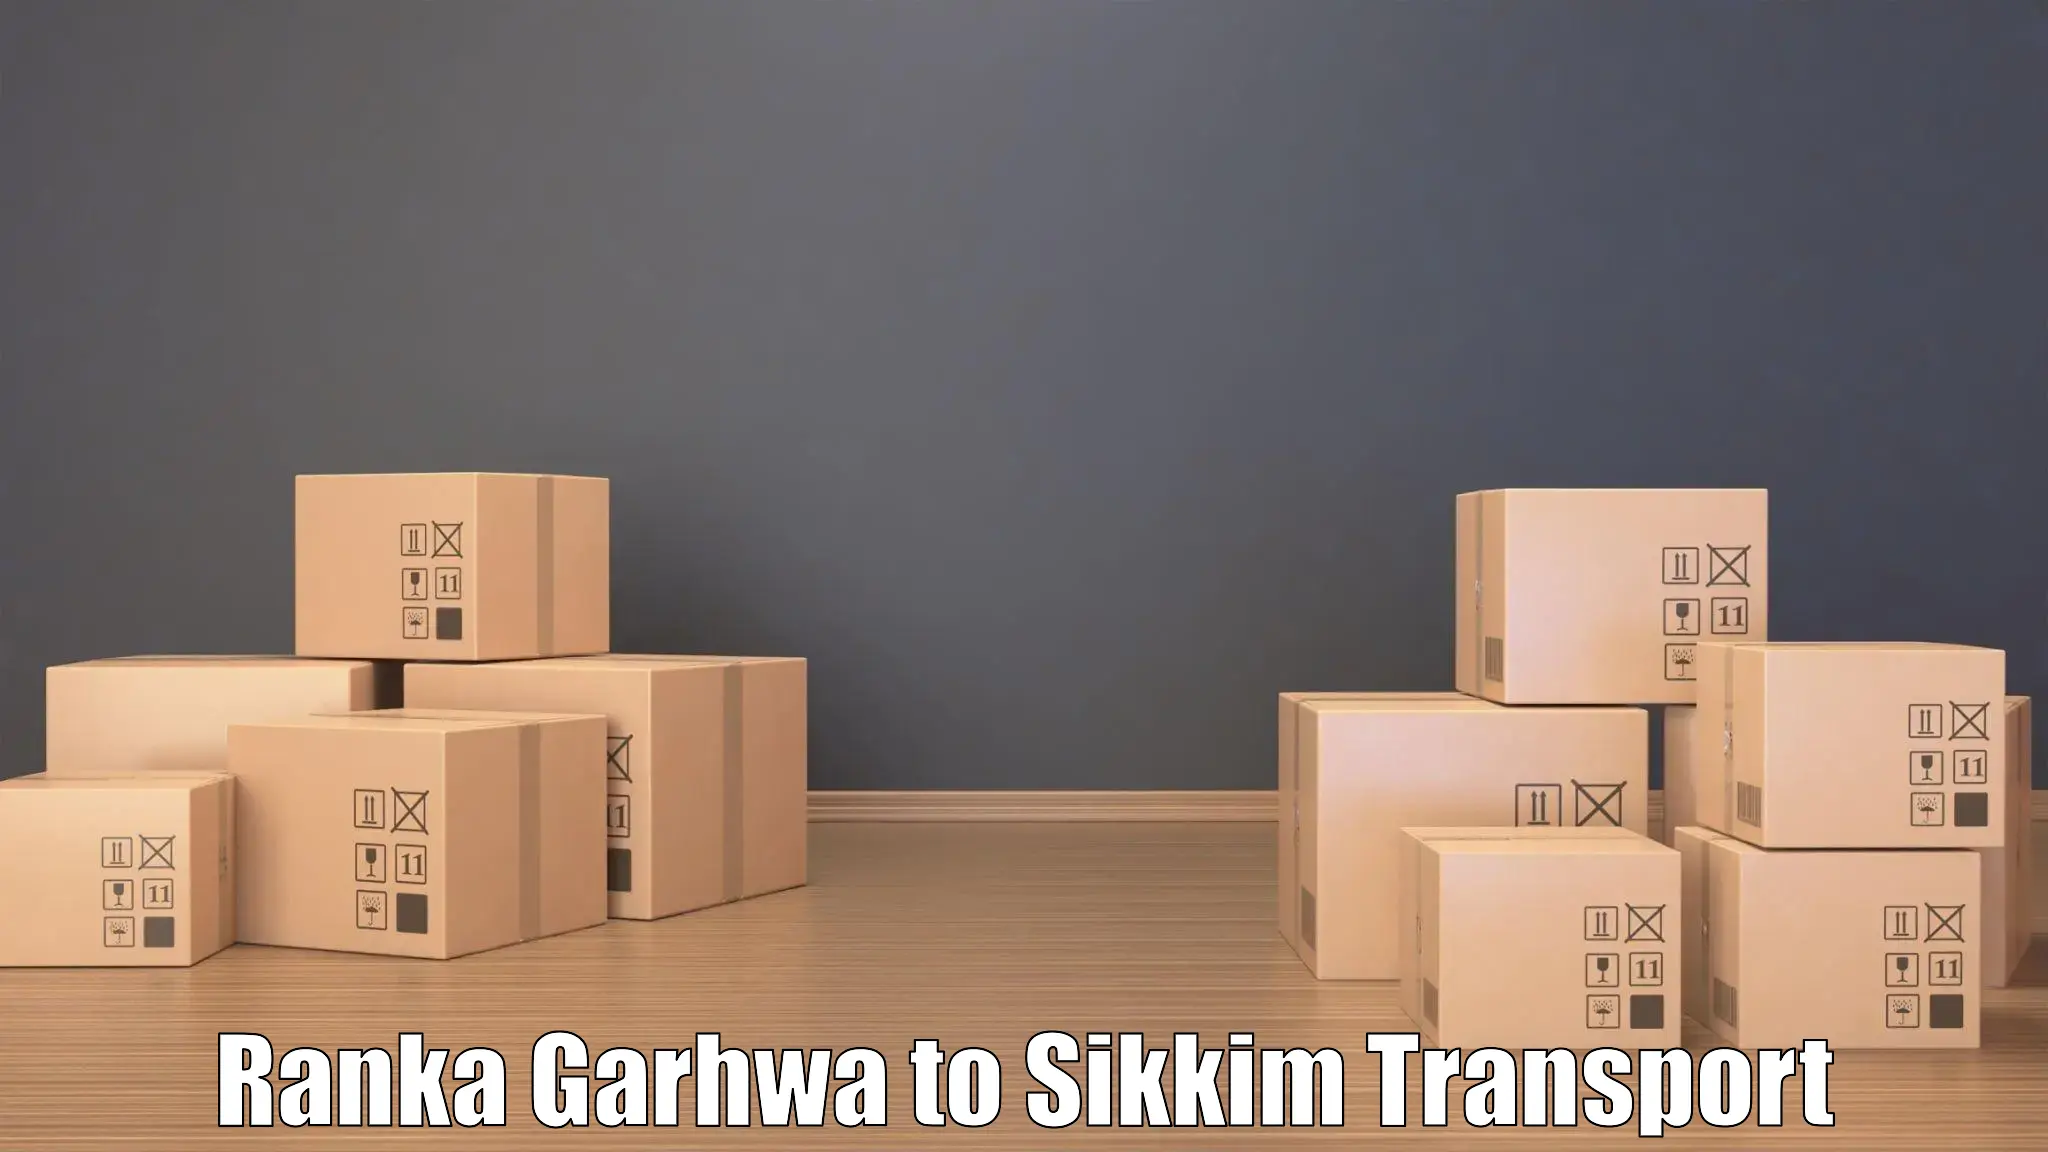 Transport in sharing Ranka Garhwa to Sikkim